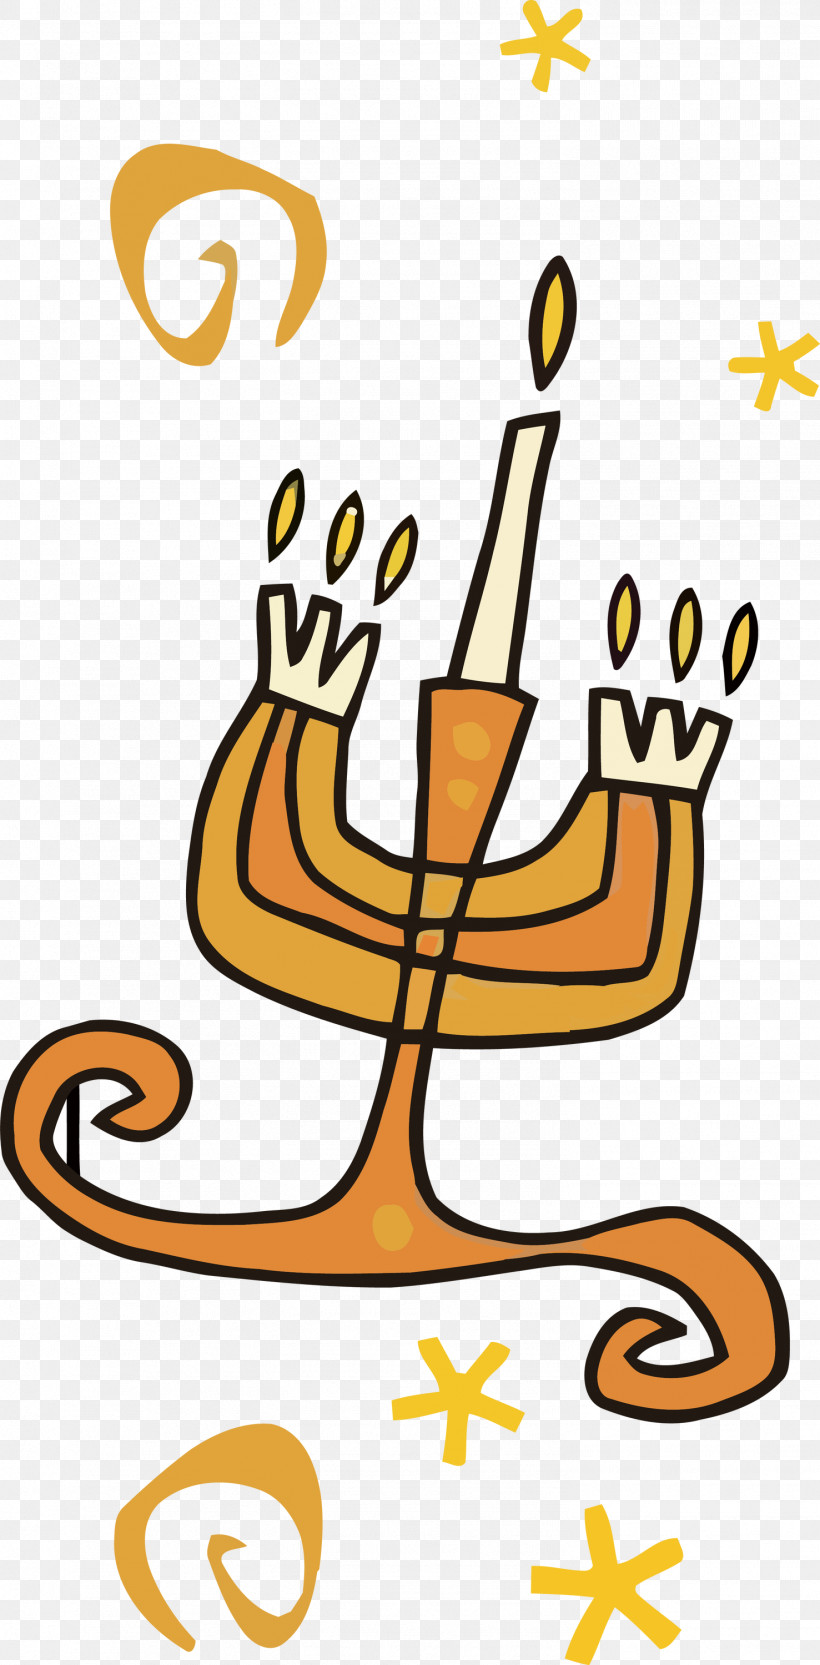 Hanukkah Candle Hanukkah Happy Hanukkah, PNG, 1477x3000px, Hanukkah Candle, Hanukkah, Happy Hanukkah, Symbol Download Free